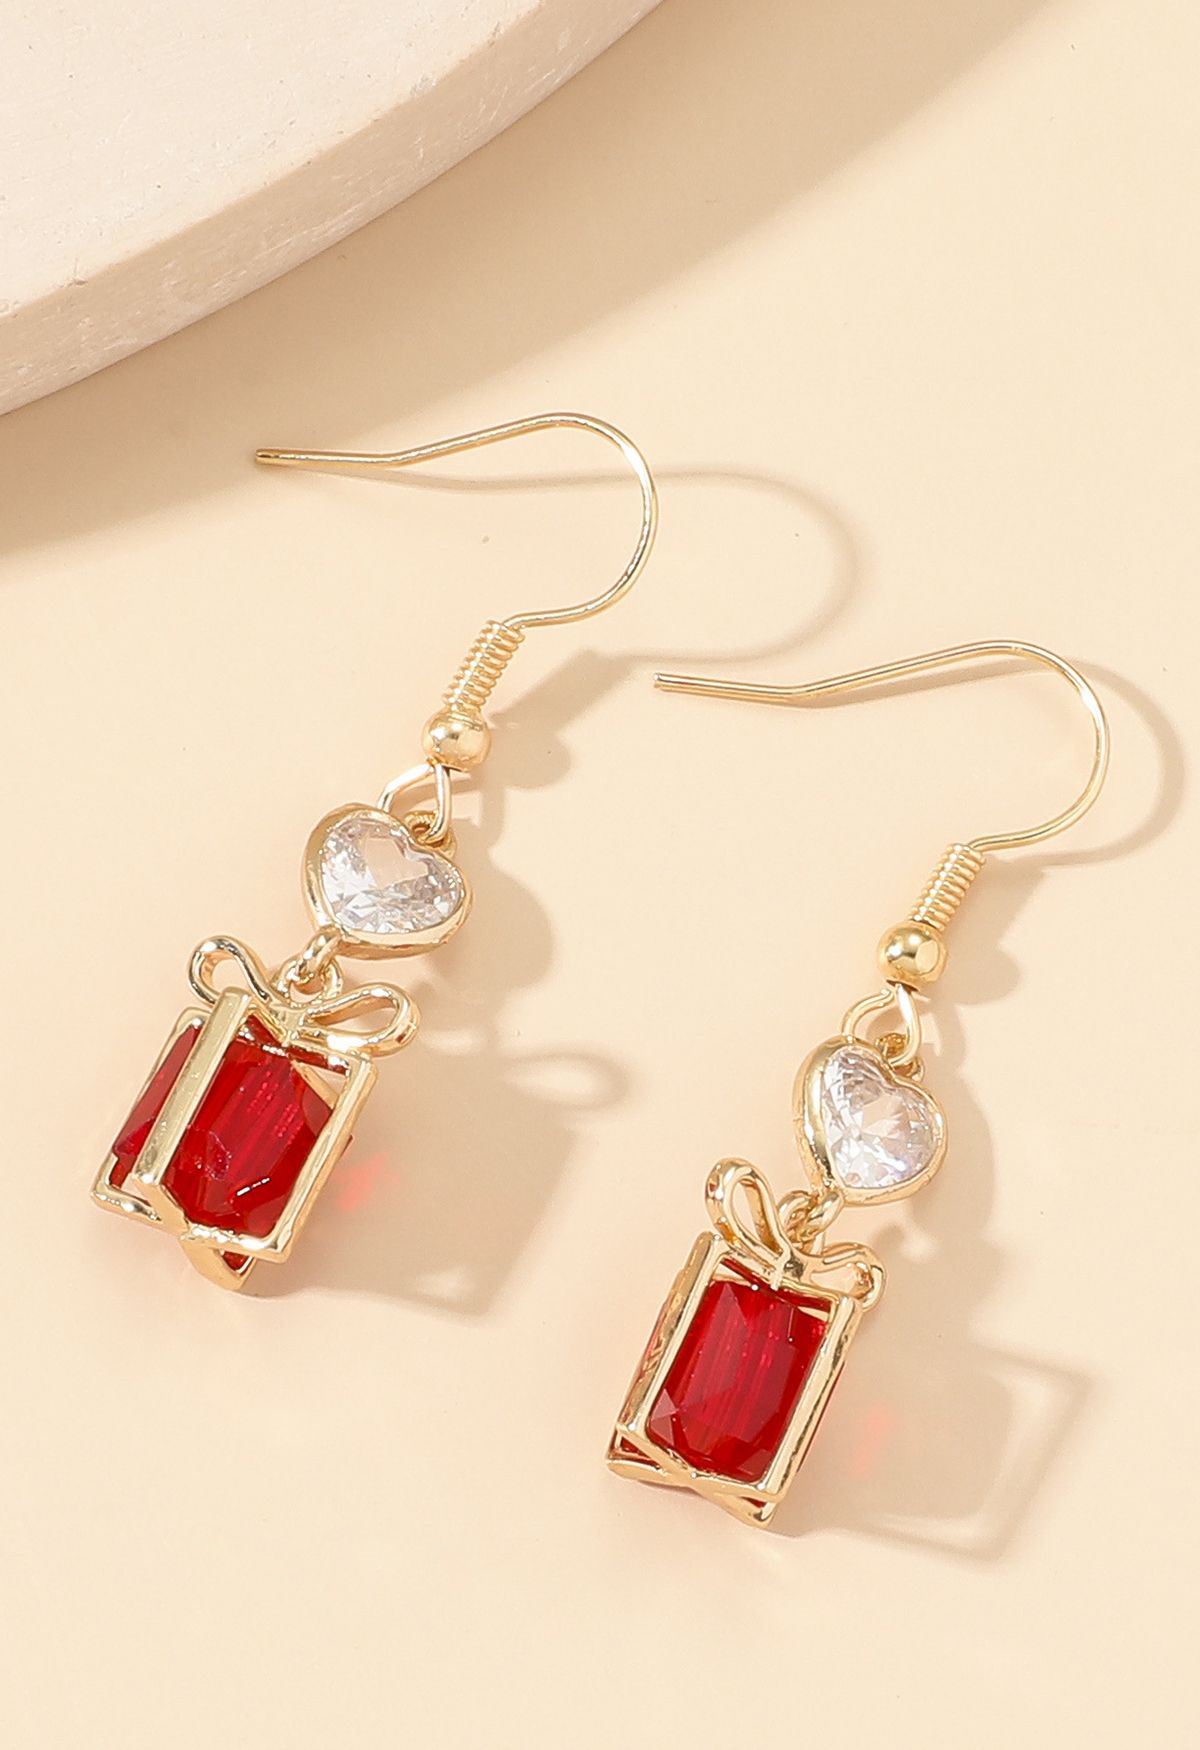 Boucles d'oreilles boîte-cadeau en cristal rouge avec garniture dorée